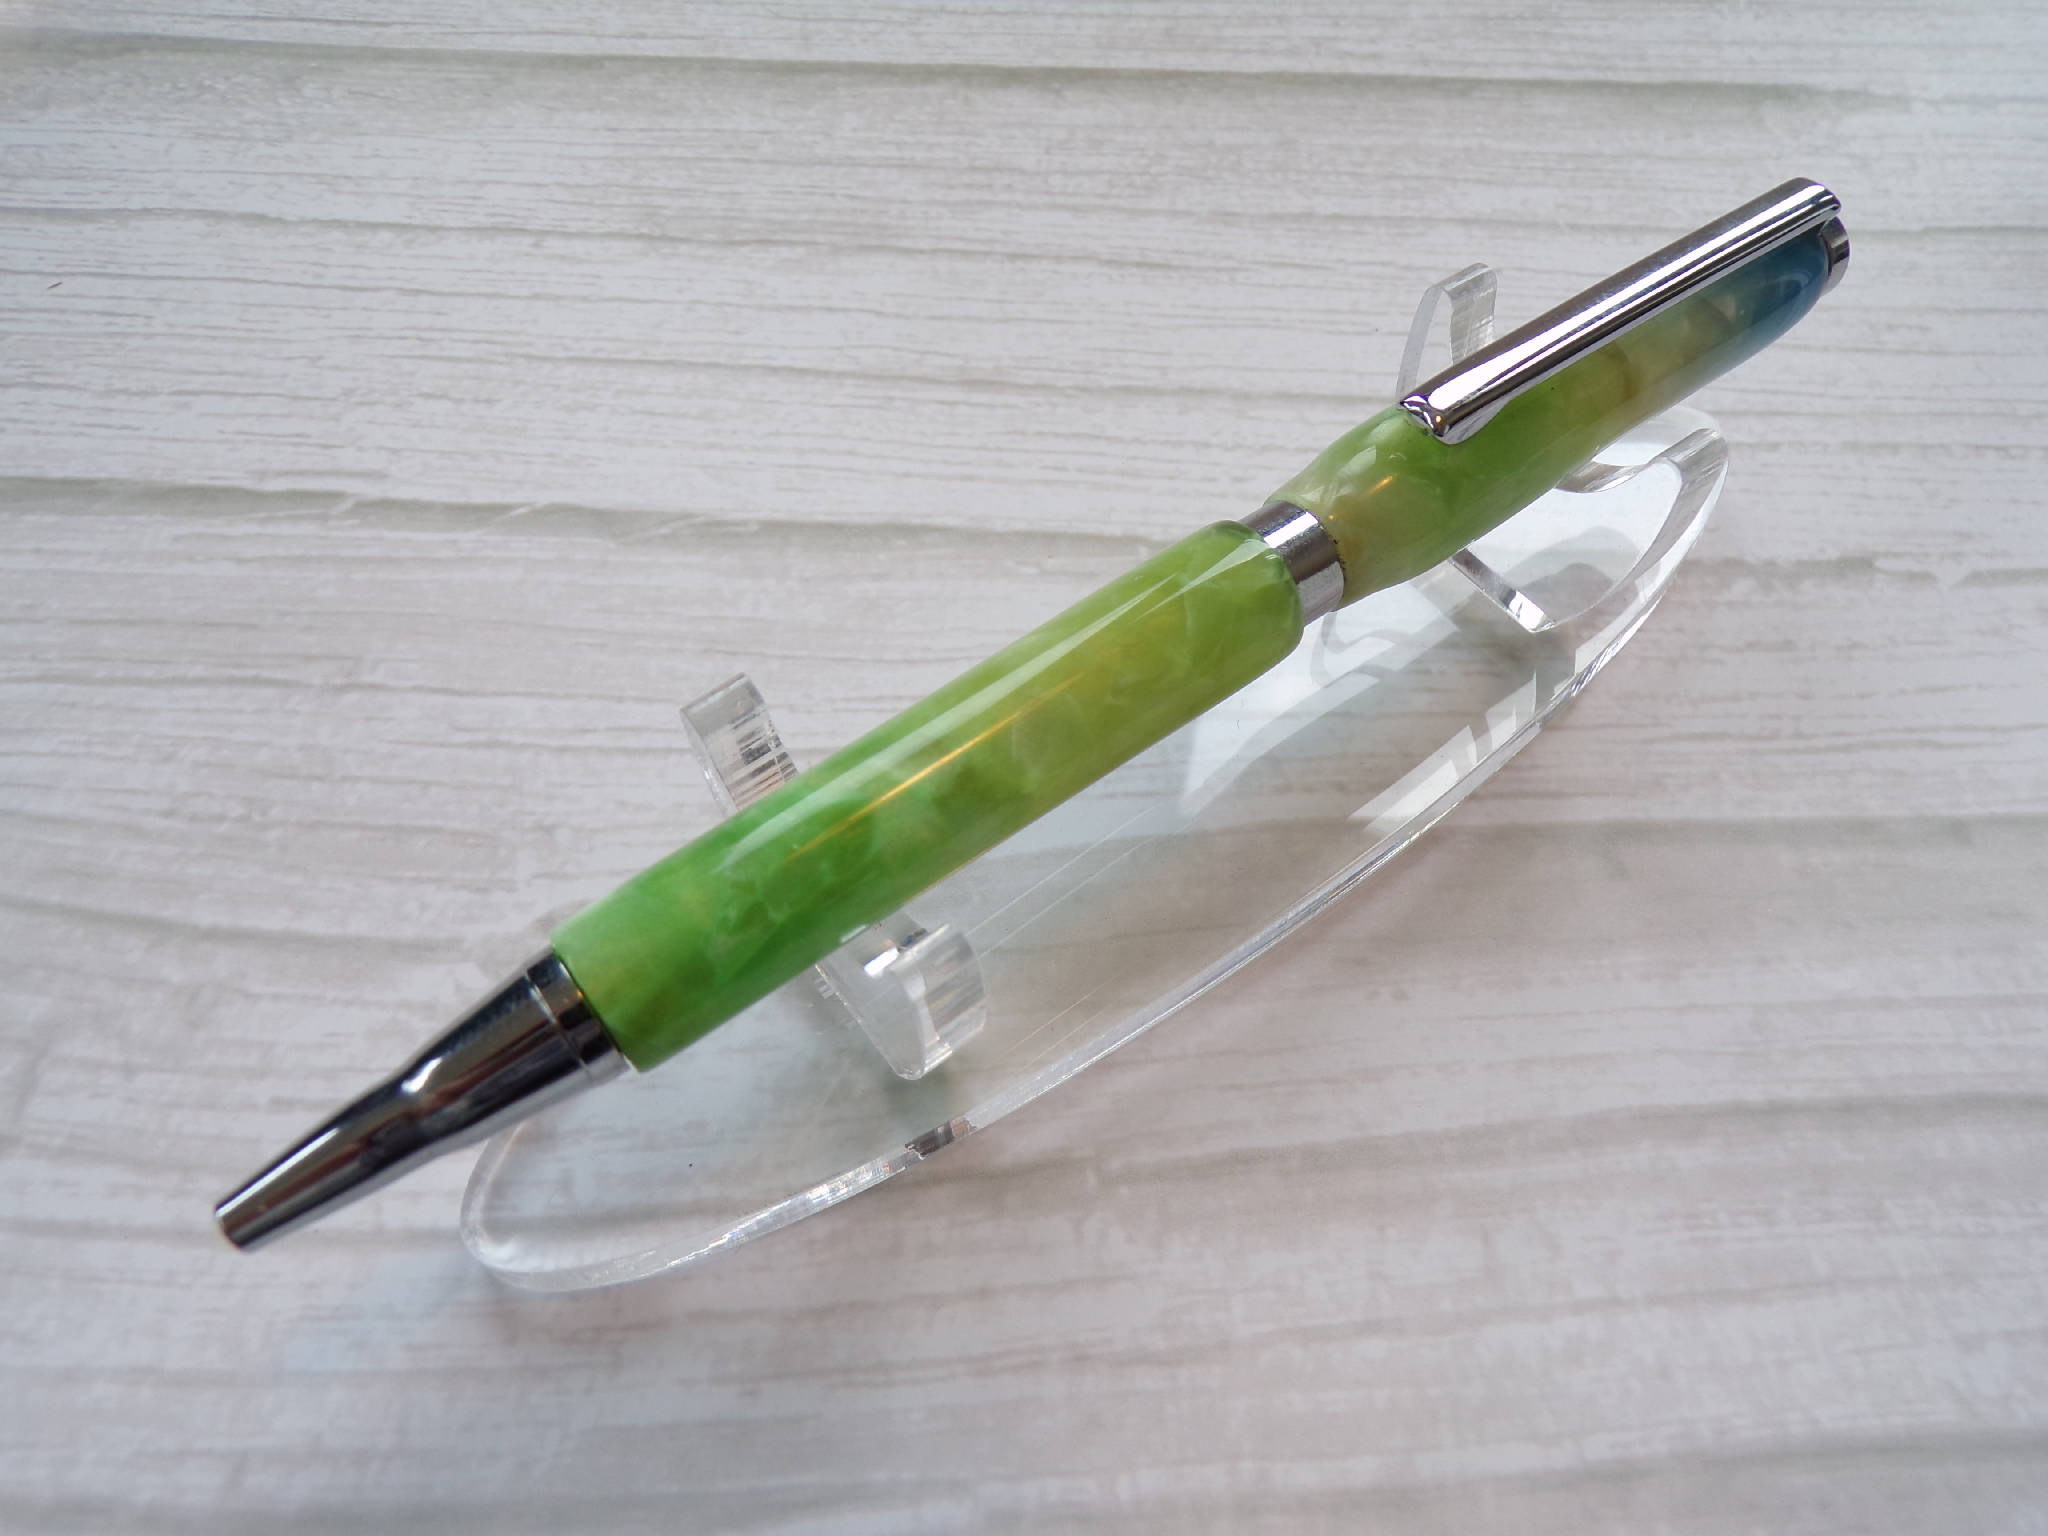 Slimline pen